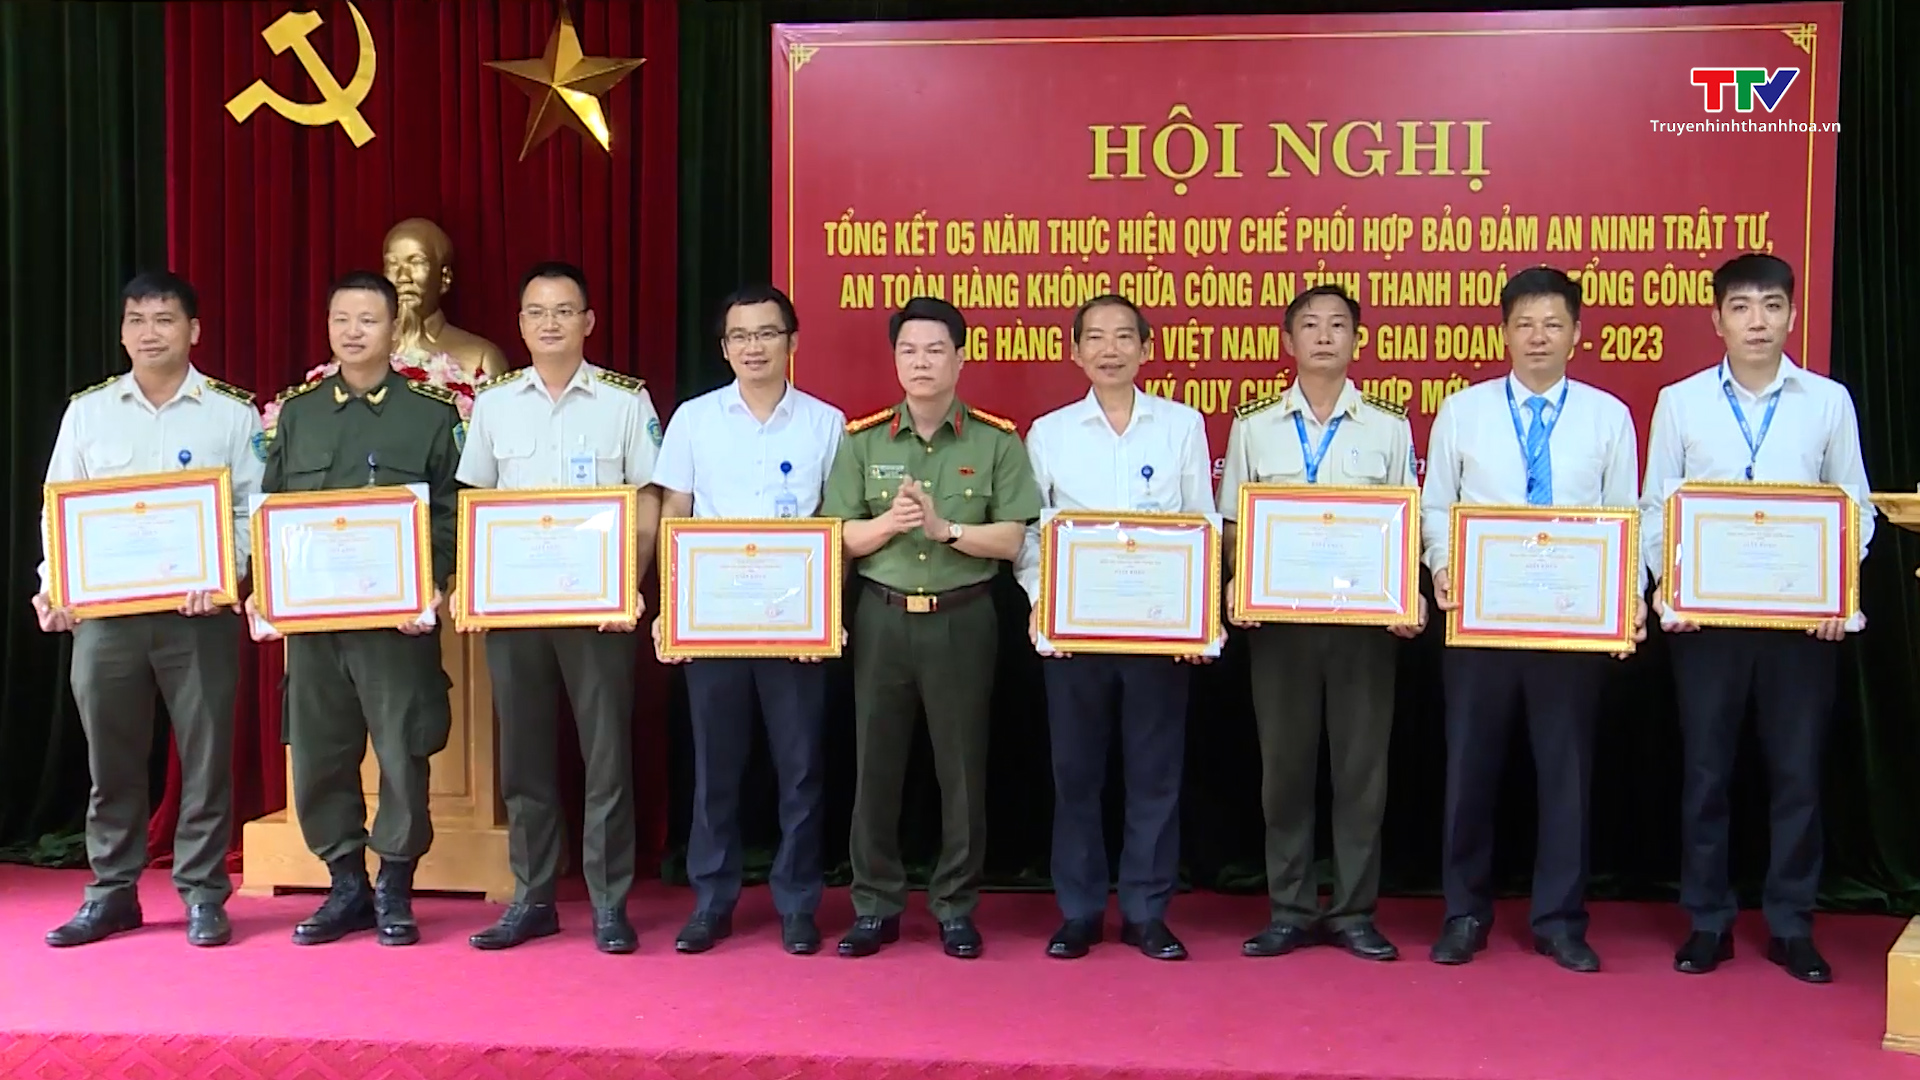 Tổng kết 5 năm thực hiện Quy chế phối hợp giữa Công an tỉnh Thanh Hóa với Tổng Công ty Cảng hàng không Việt Nam - CTCP - Ảnh 7.